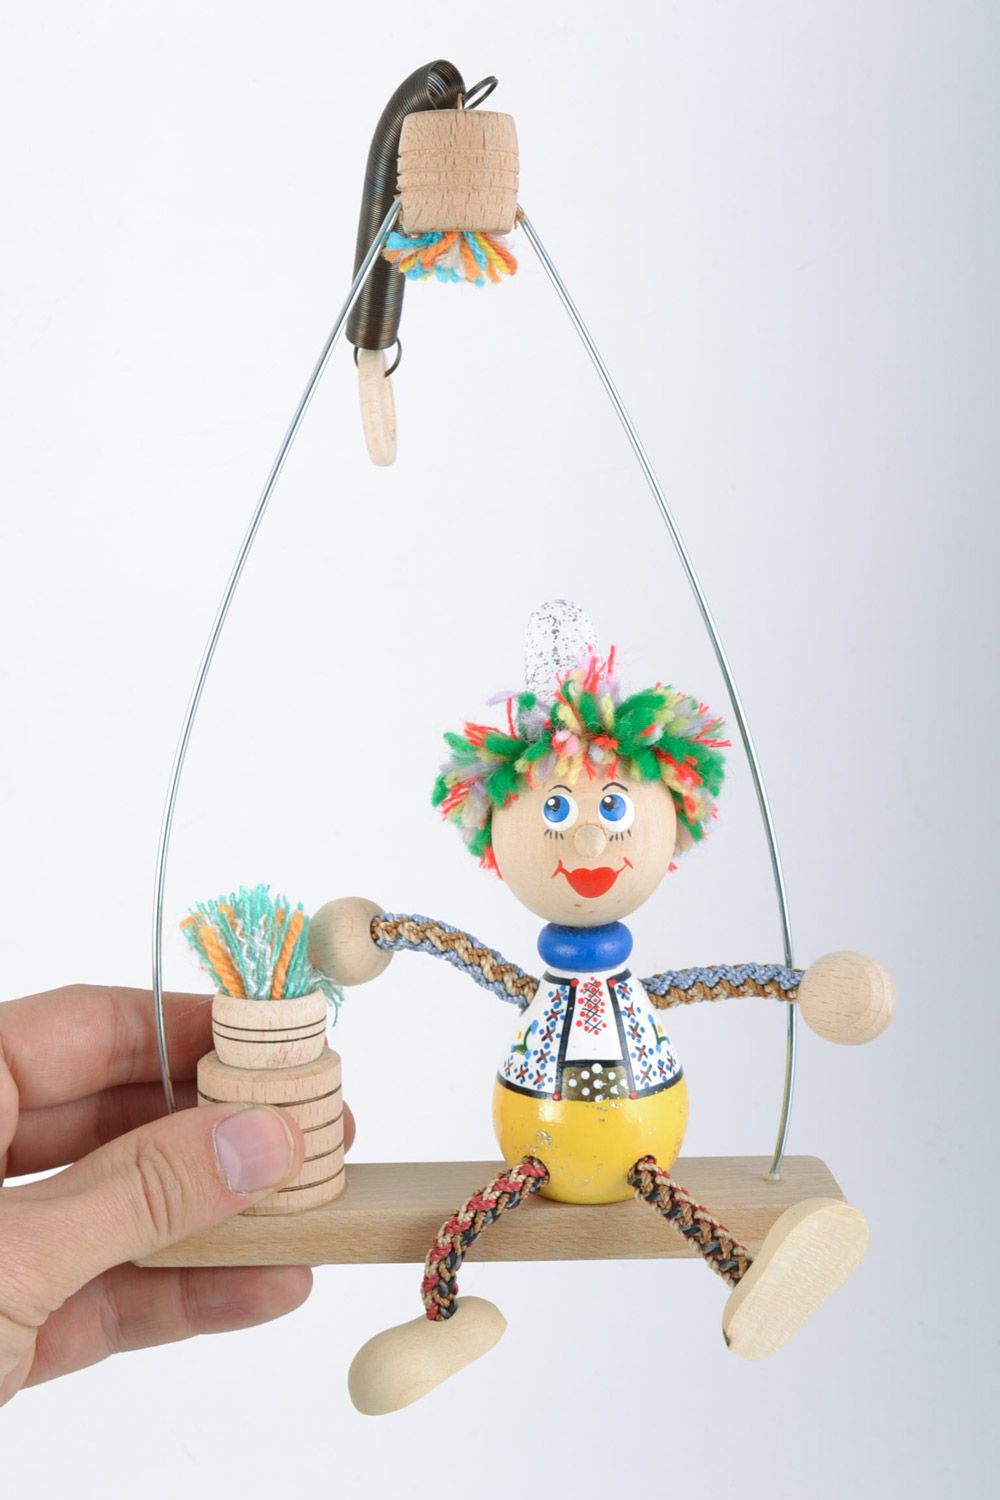 Helles schönes originelles handgemachtes Öko Spielzeug aus Holz Junge auf Bank  foto 2